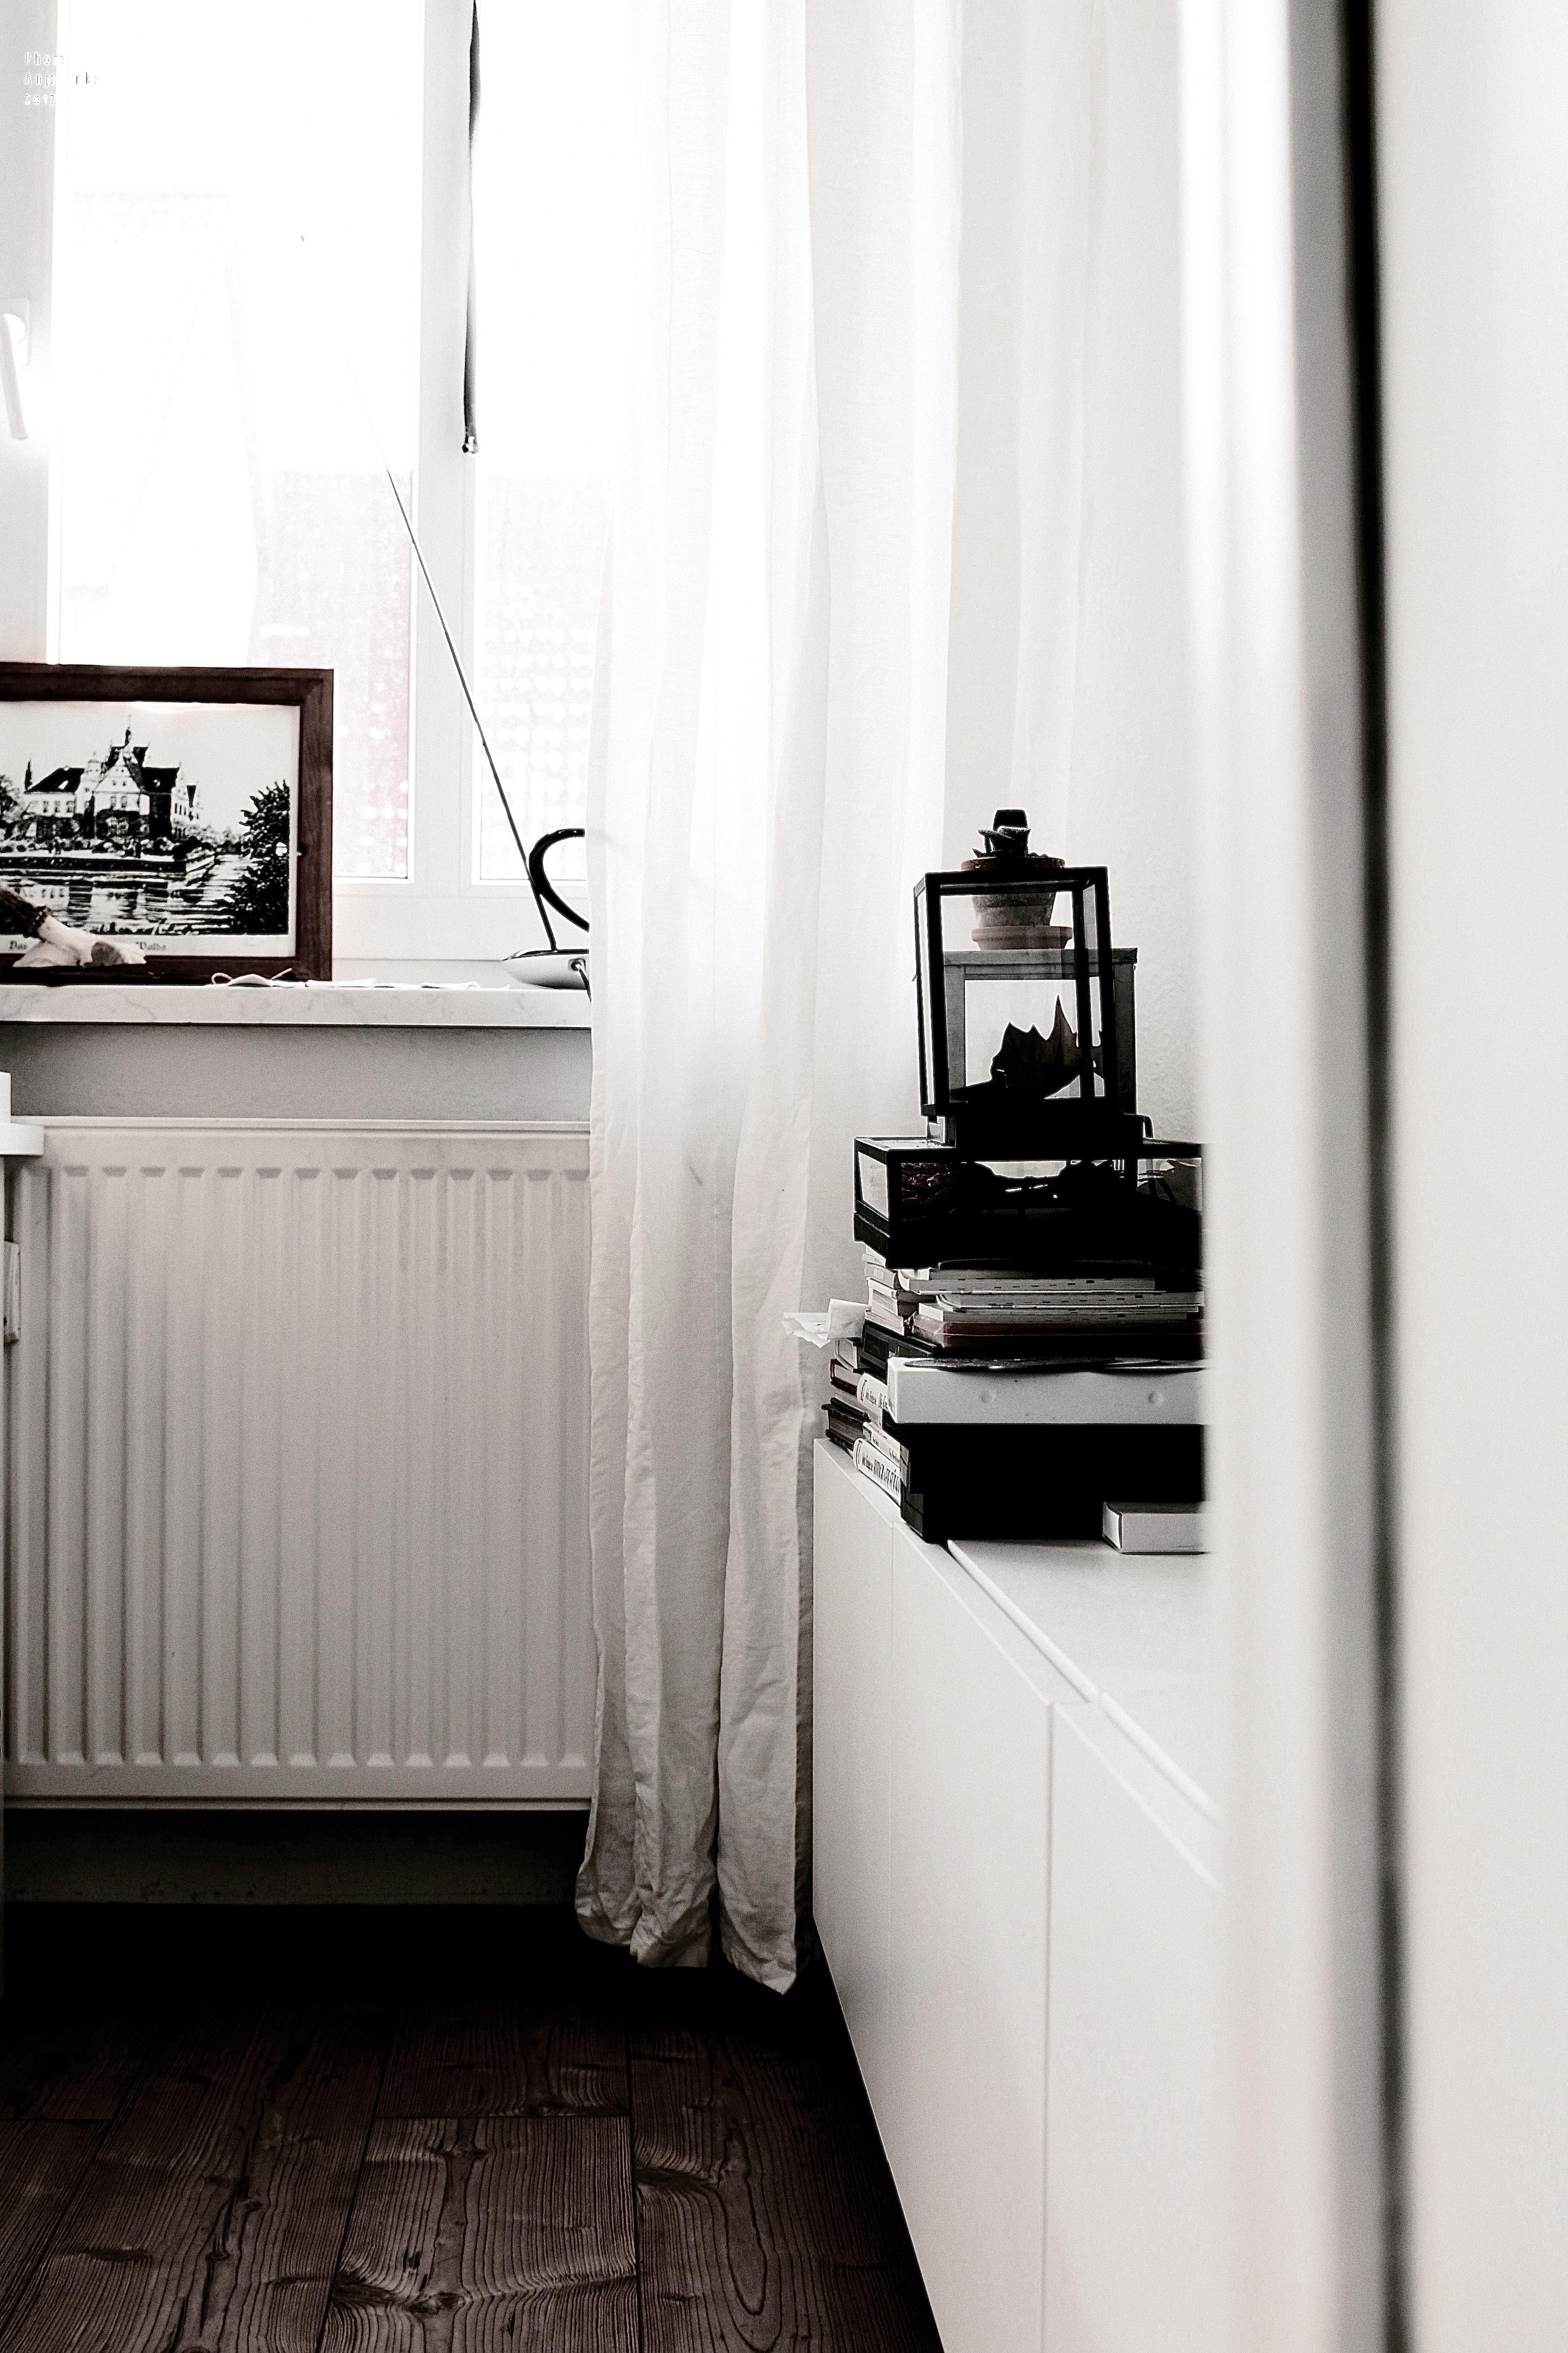 hochgestapelt #wohnzimmer #altbau #heizung #ikea #laminat #vitrine #zeichnung ©Anja Linke